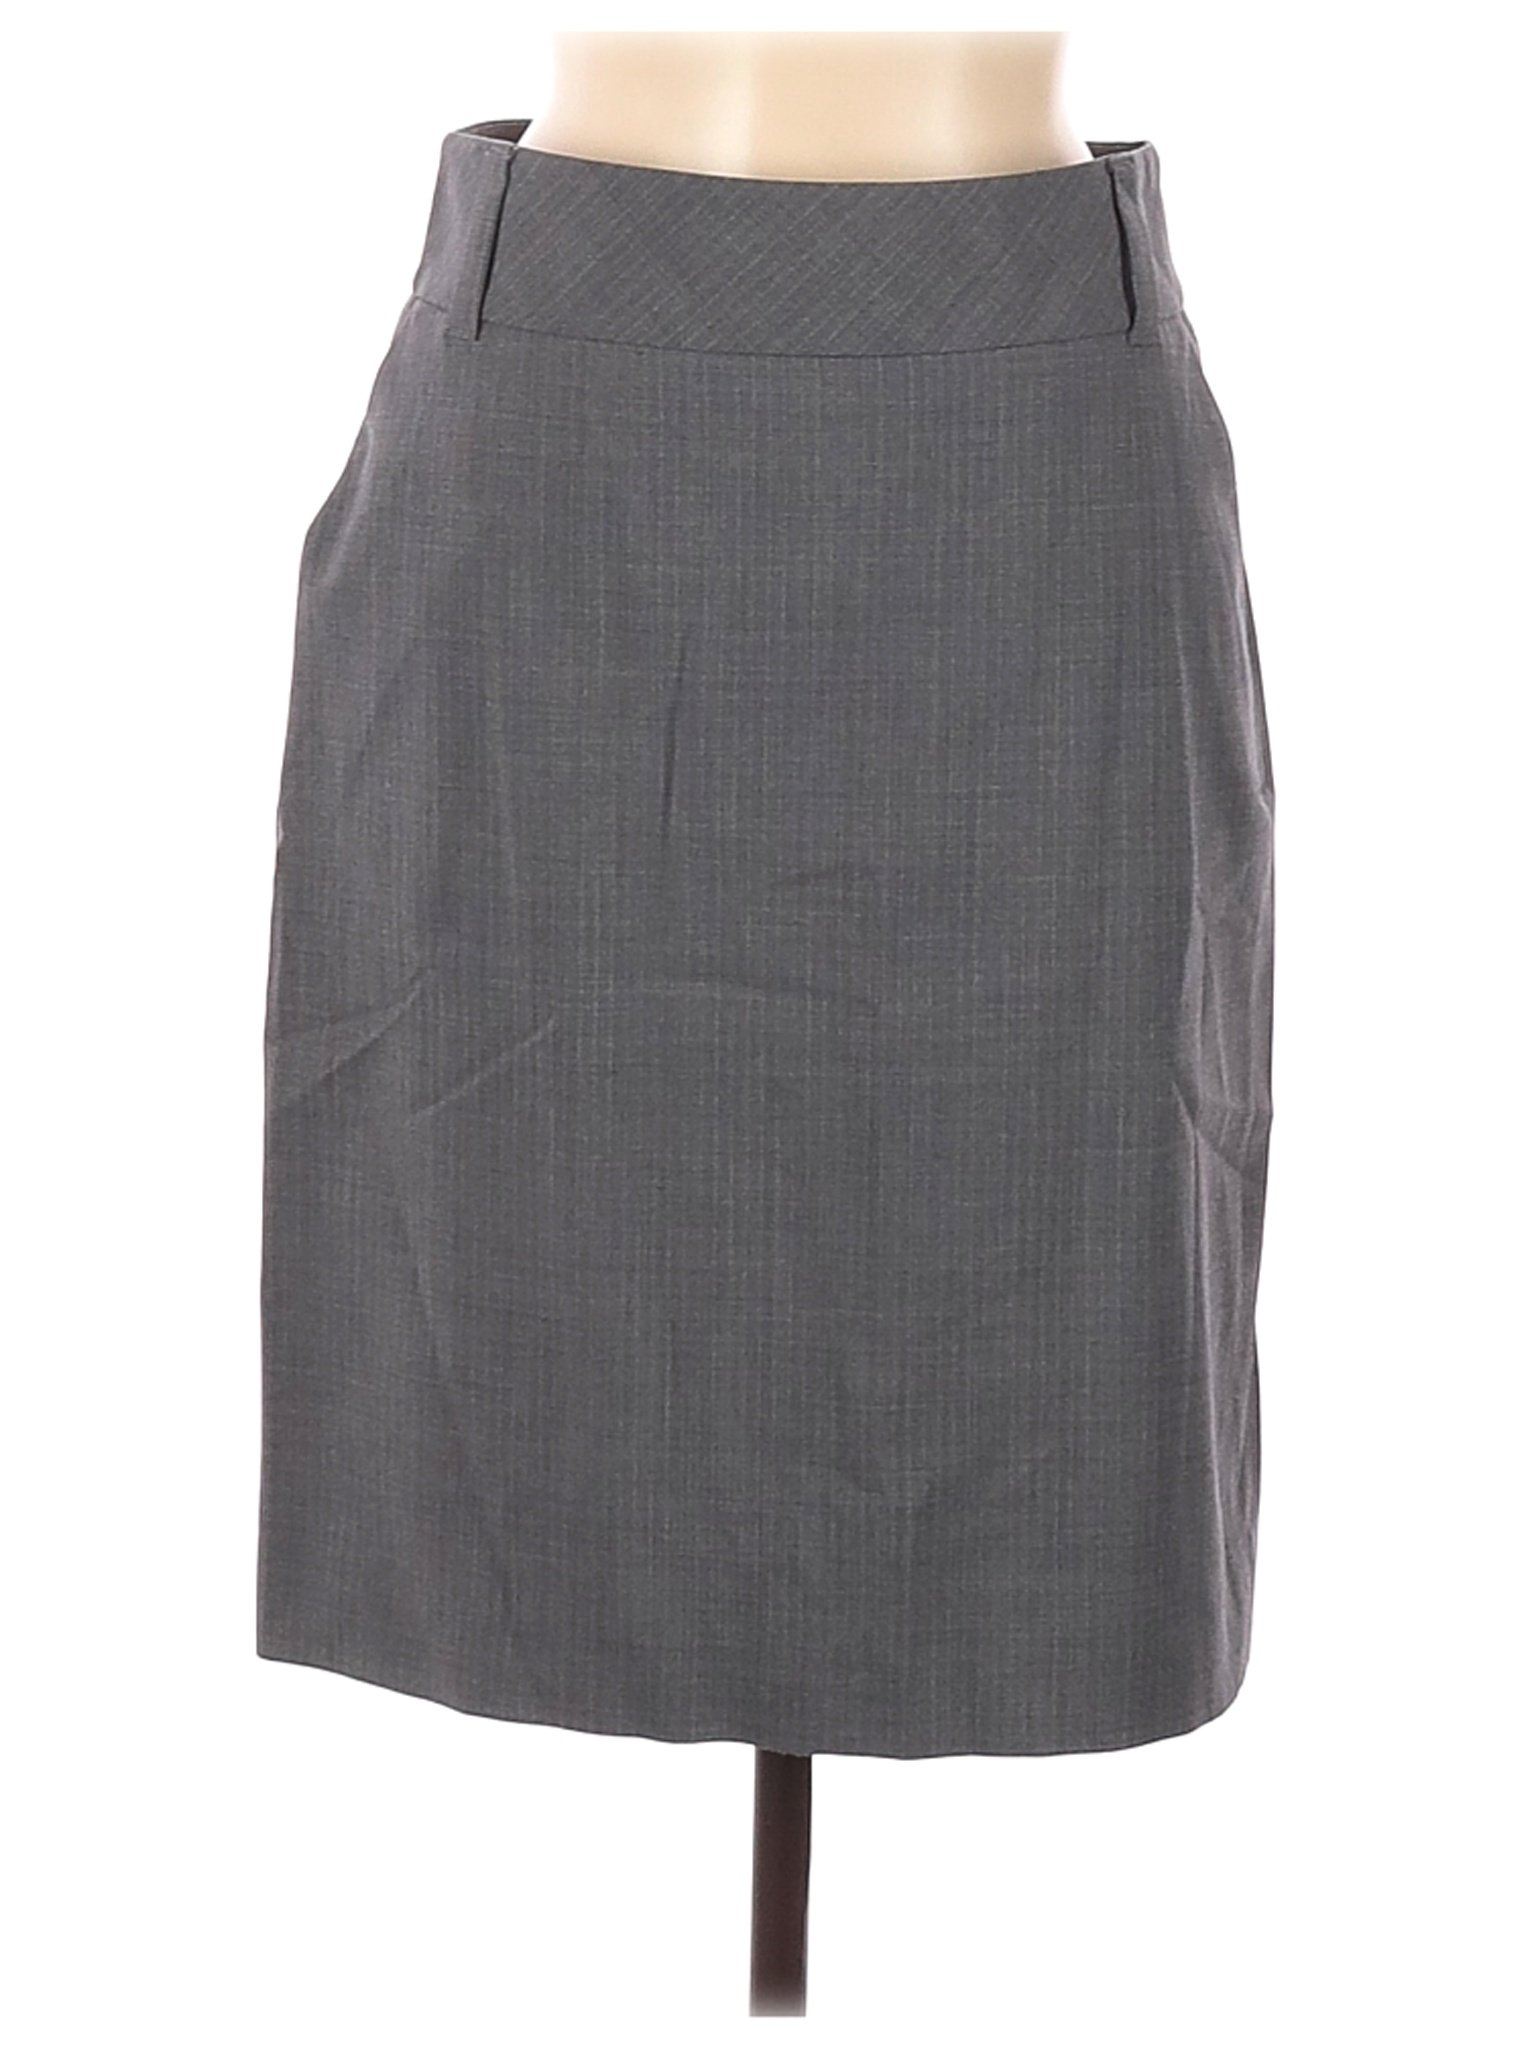 Banana Republic Women Gray Wool Skirt 8 | eBay